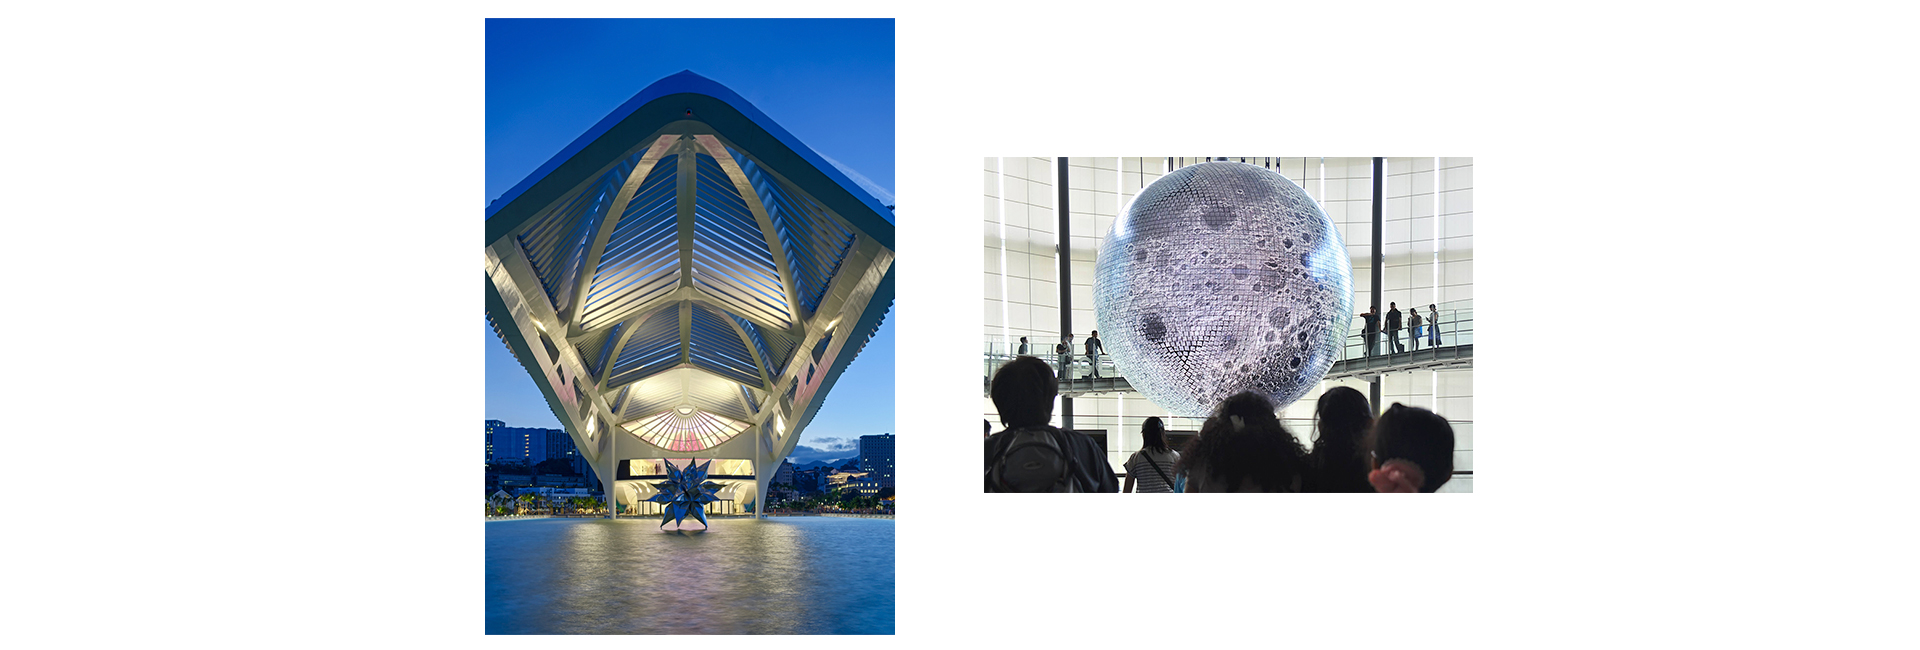 Музей завтрашнего дня в Рио-де-Жанейро, Национальный музей науки и инноваций в Токио